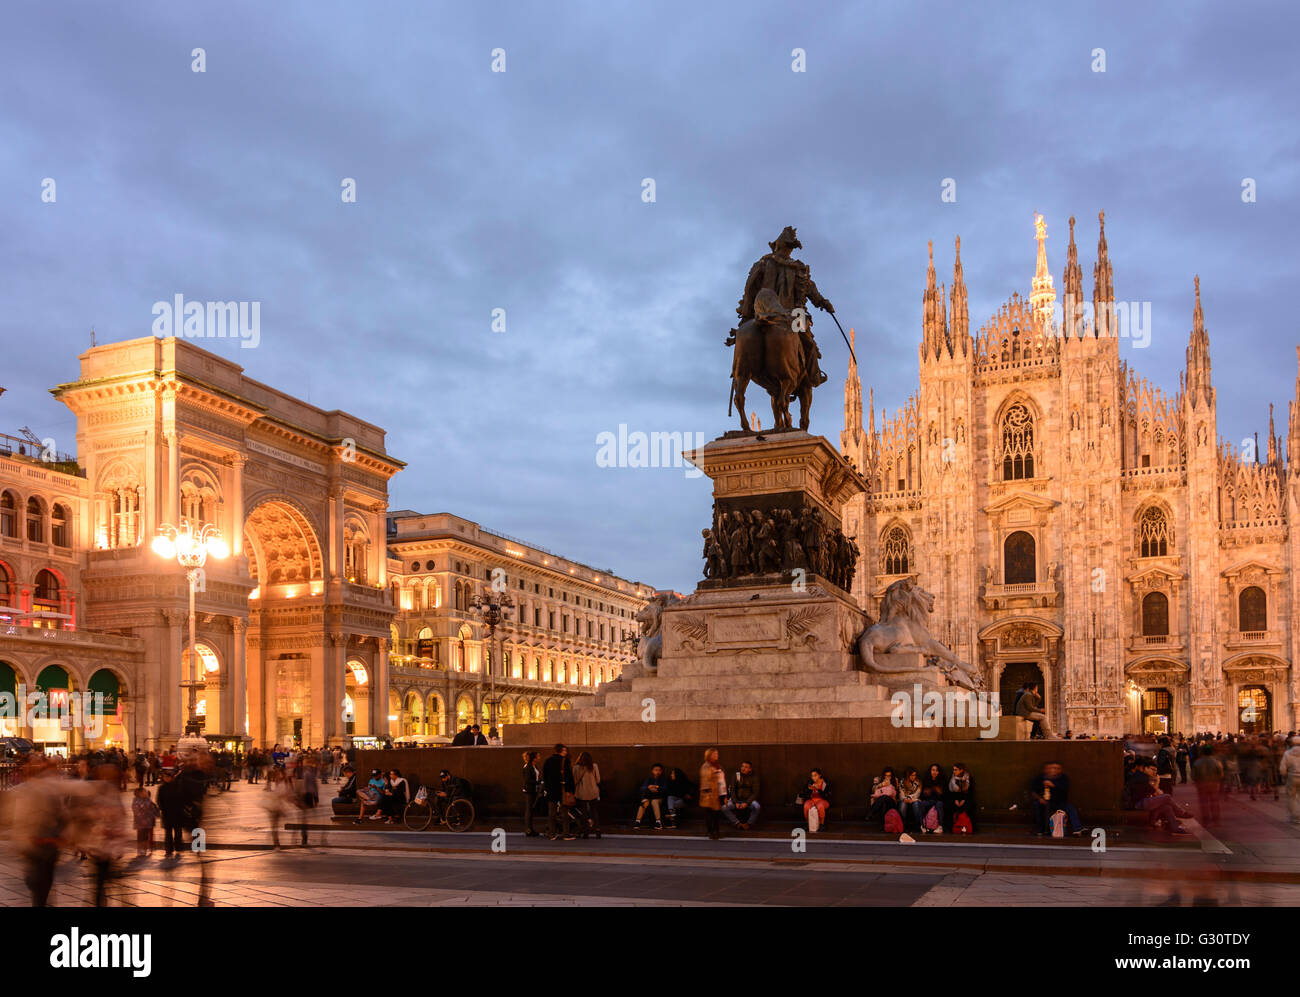 La Piazza del Duomo avec l'Arc de triomphe à l'entrée de la galerie Vittorio Emanuele II, Cathédrale et statue équestre de V Banque D'Images